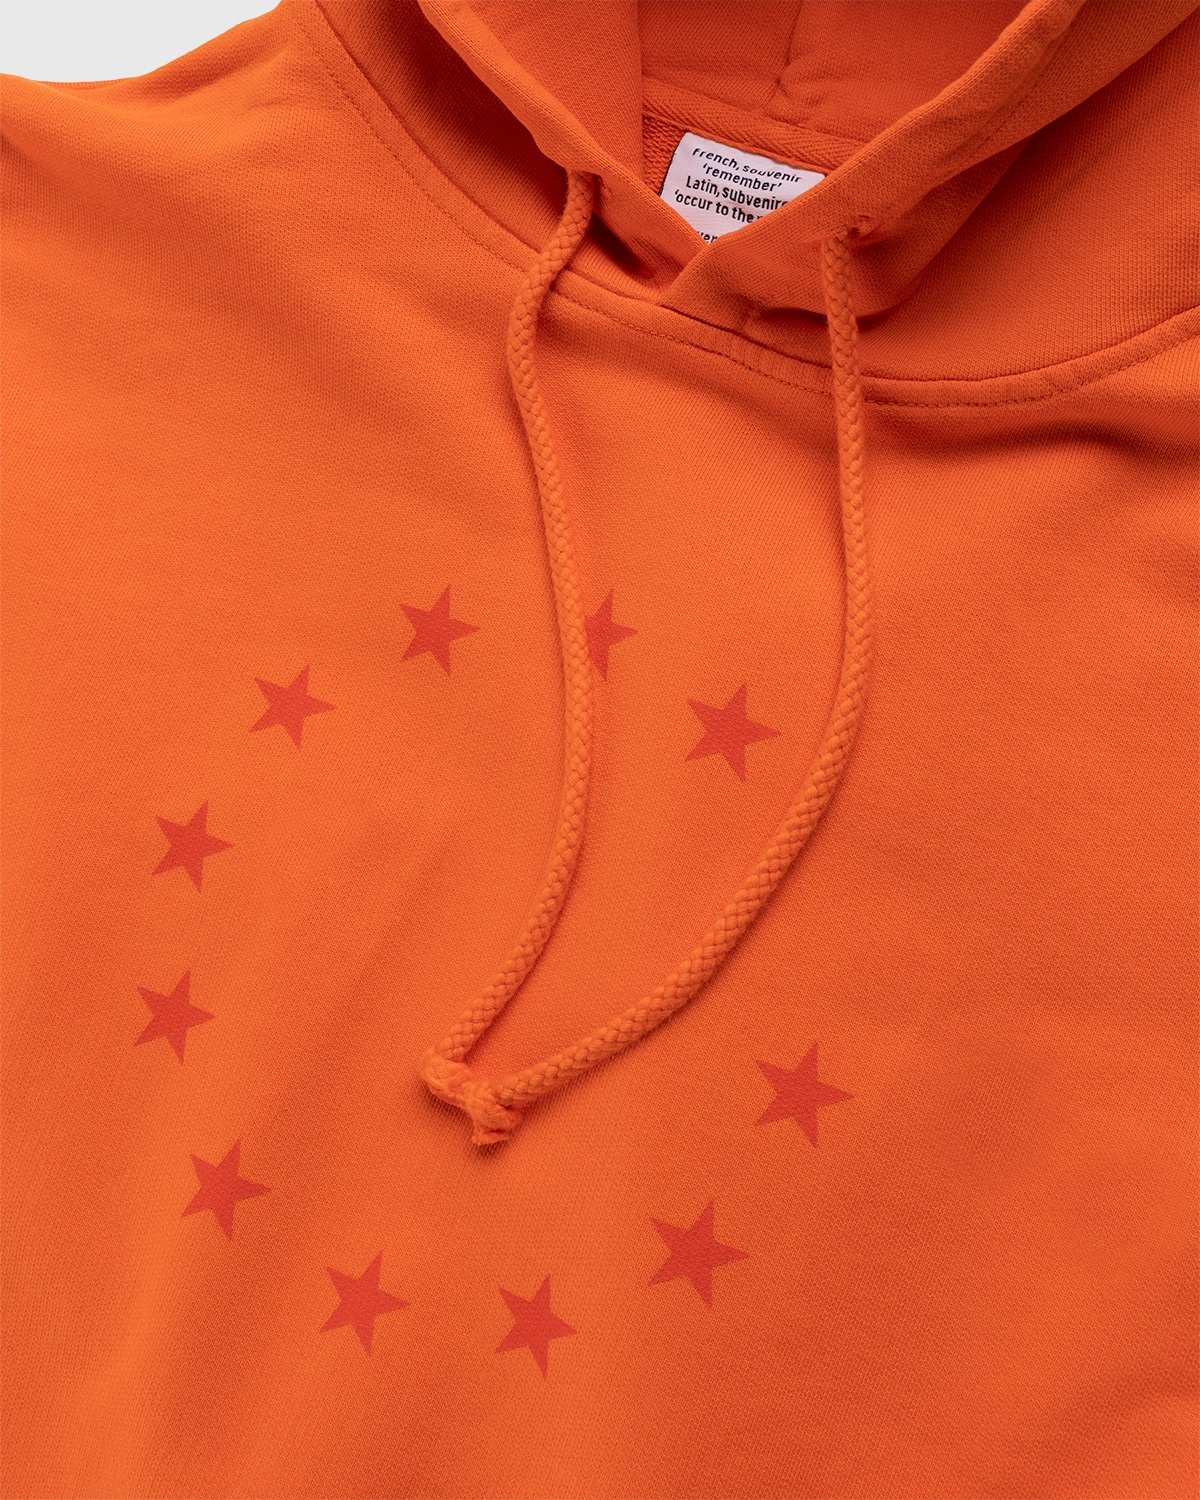 Sweatshirt Louis Vuitton Orange size S International in Cotton